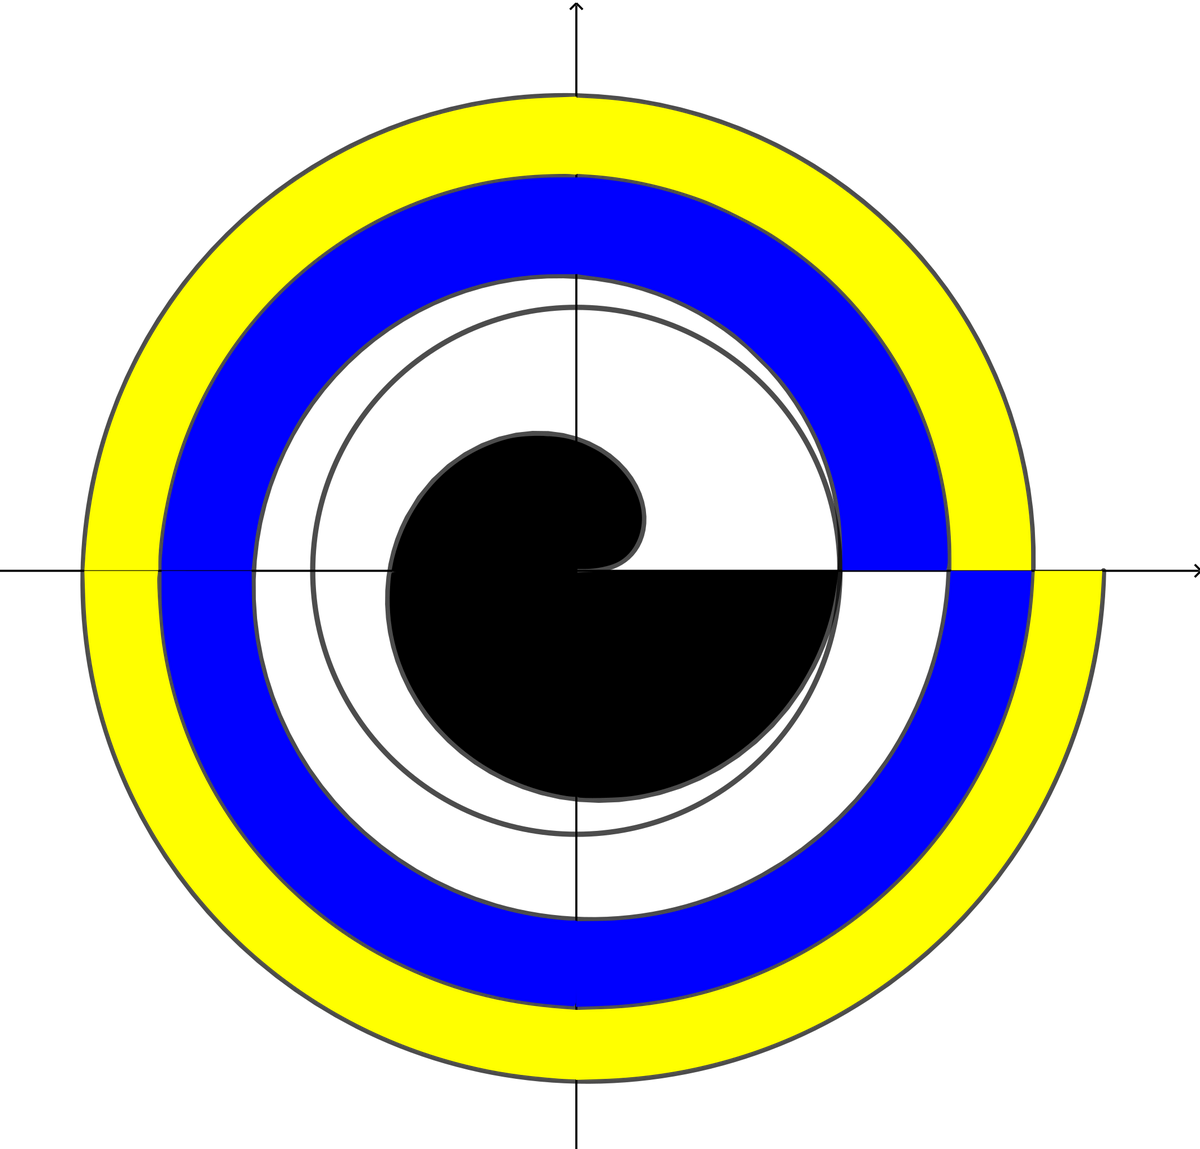 सर्पिल की इस छवि में, पीला भाग, नीला भाग और सफेद भाग सभी का क्षेत्रफल समान है।  इस सर्पिल को क्या कहते हैं?